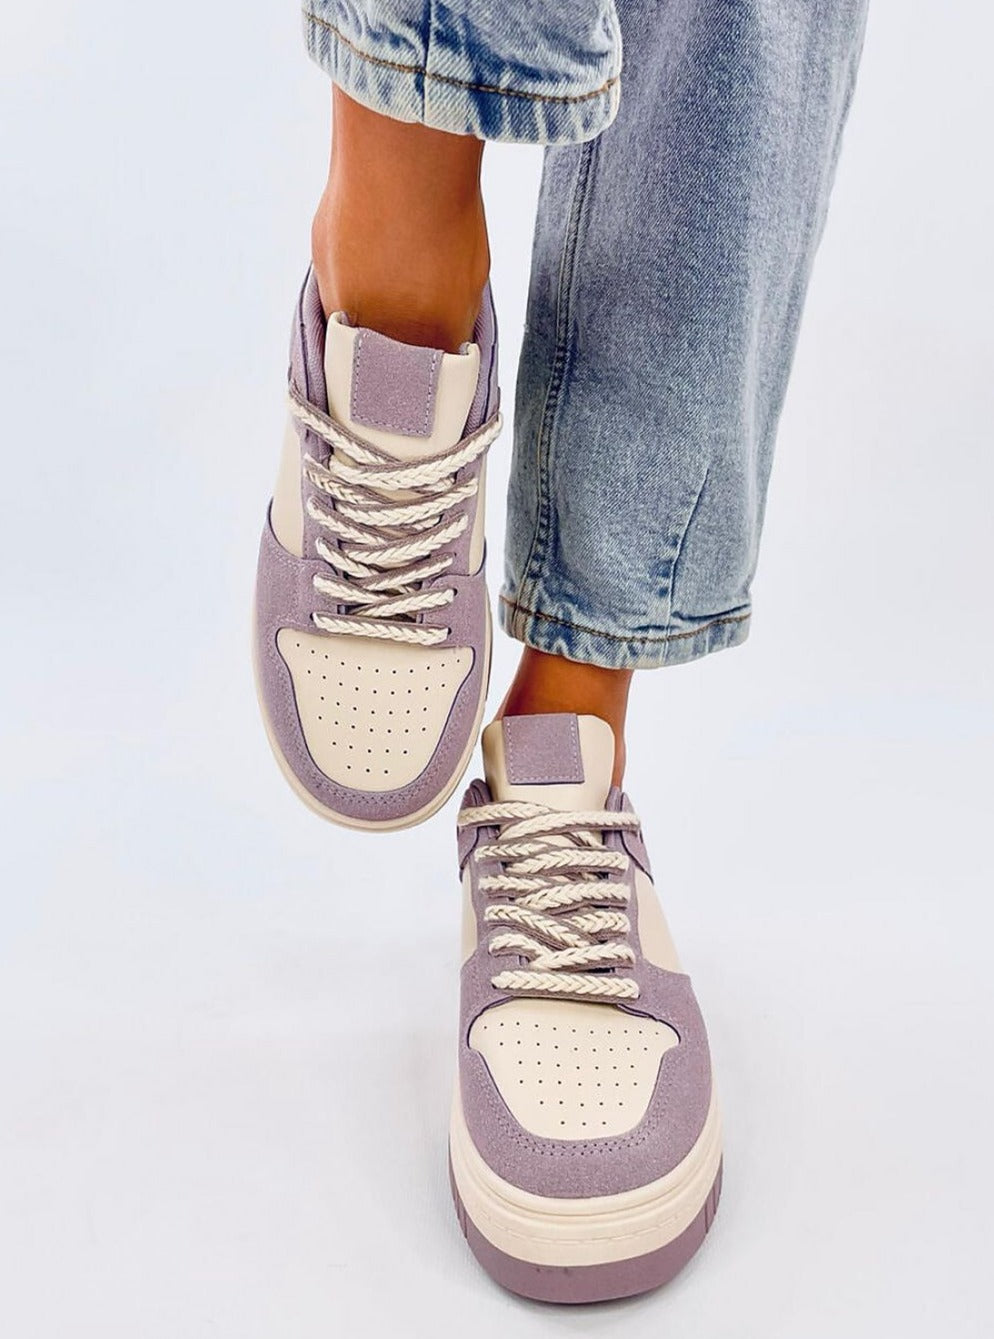 TEEK - Lavender Looker Platform Sneakers SHOES TEEK MH   